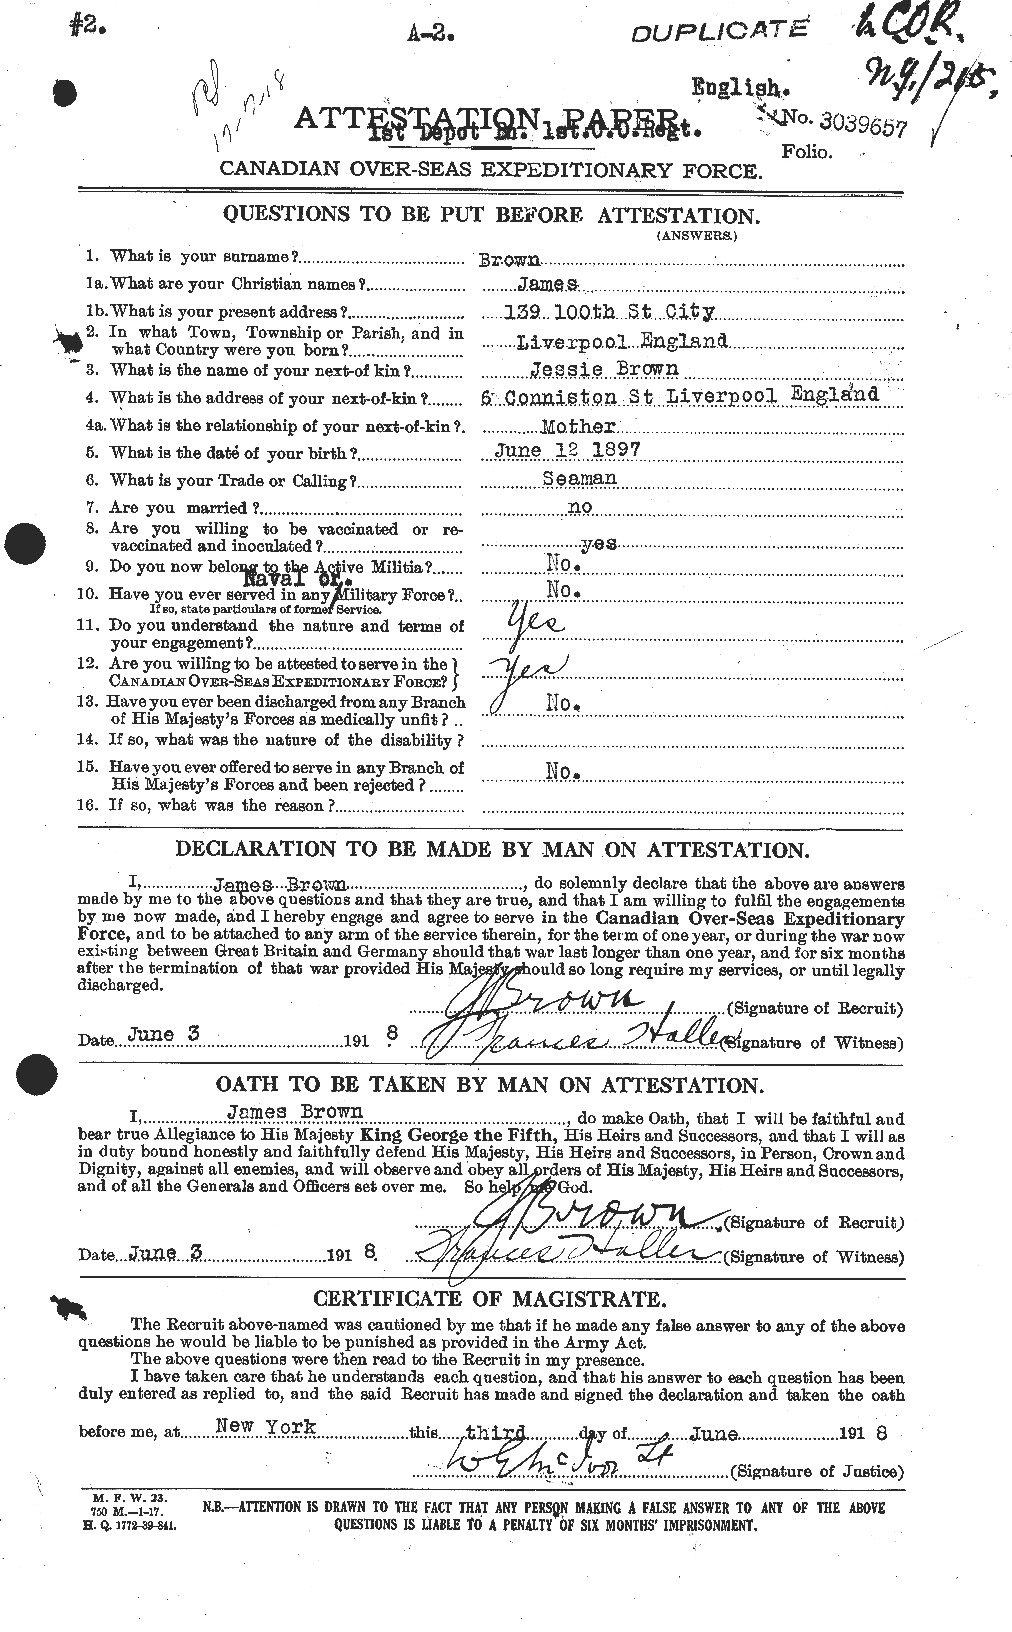 Dossiers du Personnel de la Première Guerre mondiale - CEC 265772a